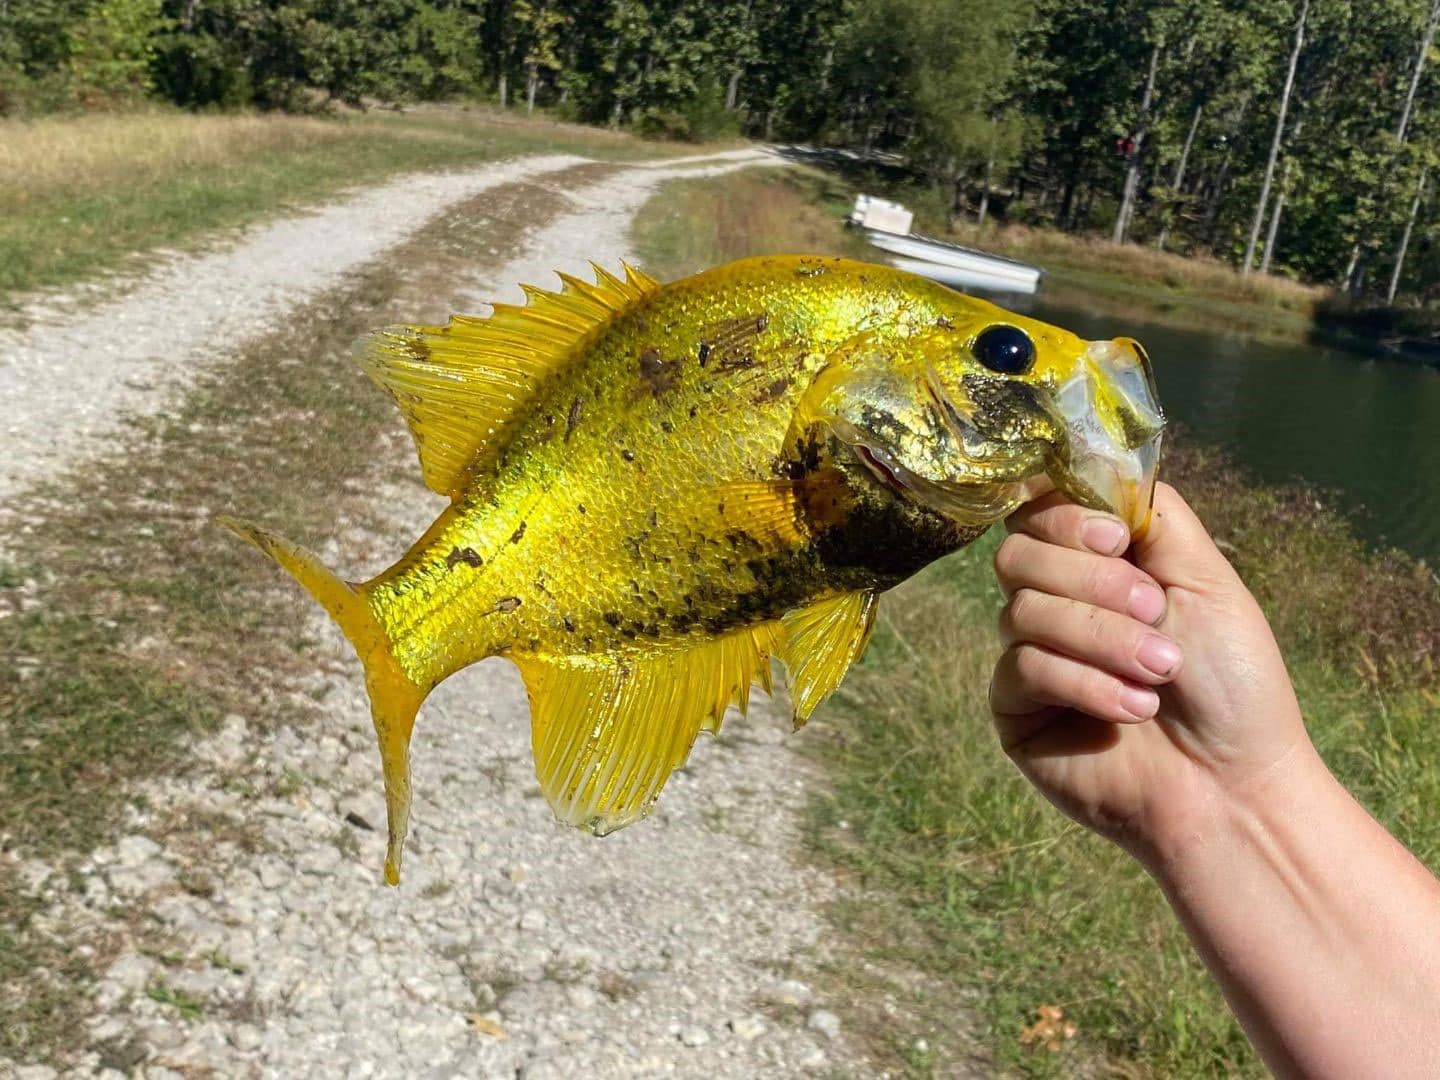 Angler Catches a Rare Golden Crappie